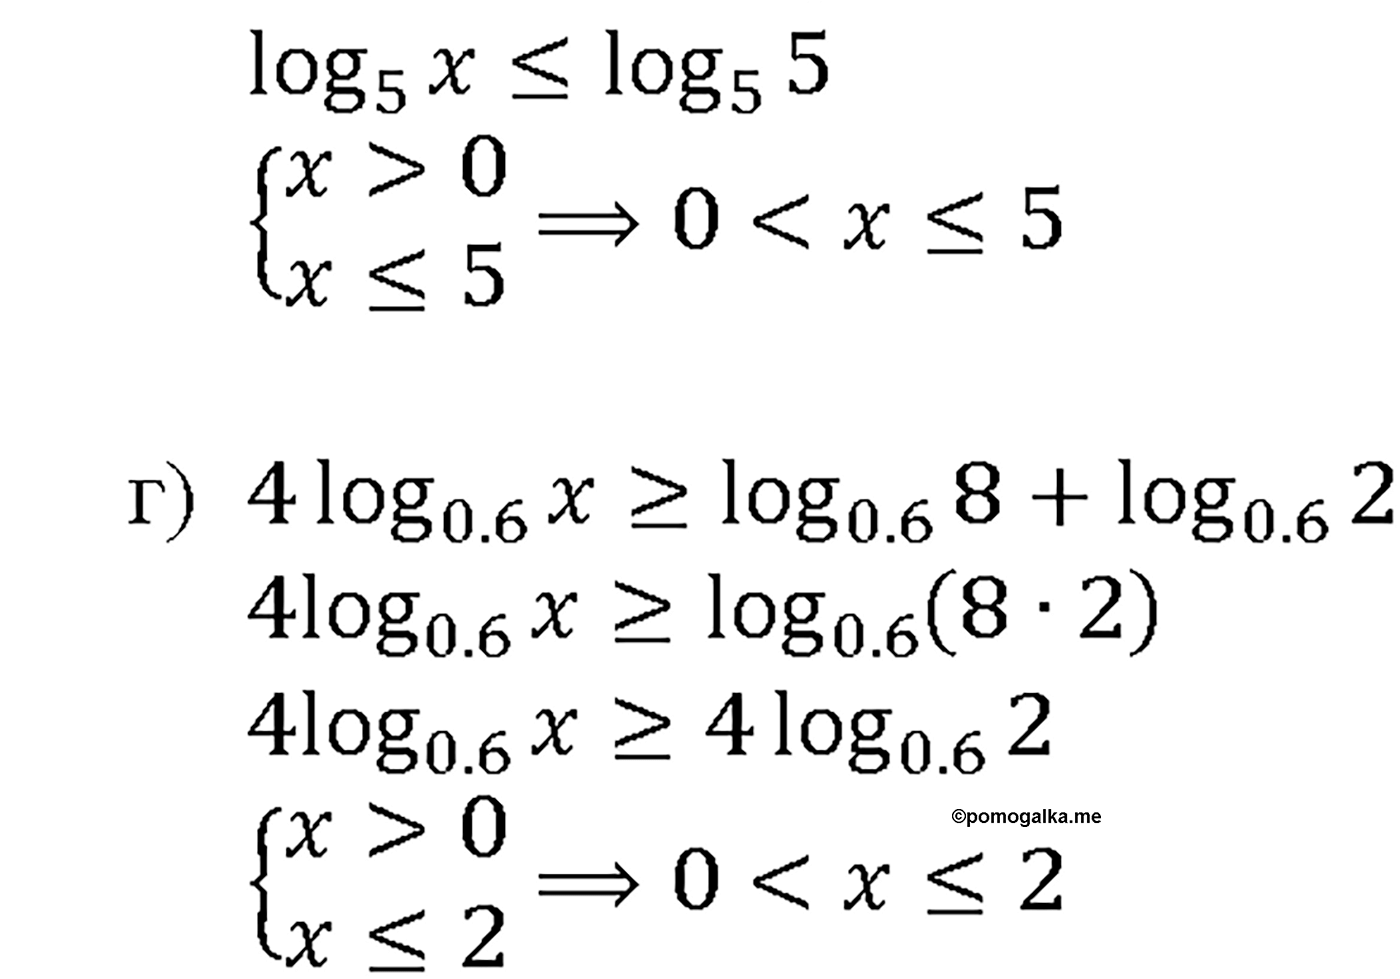 задача №45.10 алгебра 10-11 класс Мордкович